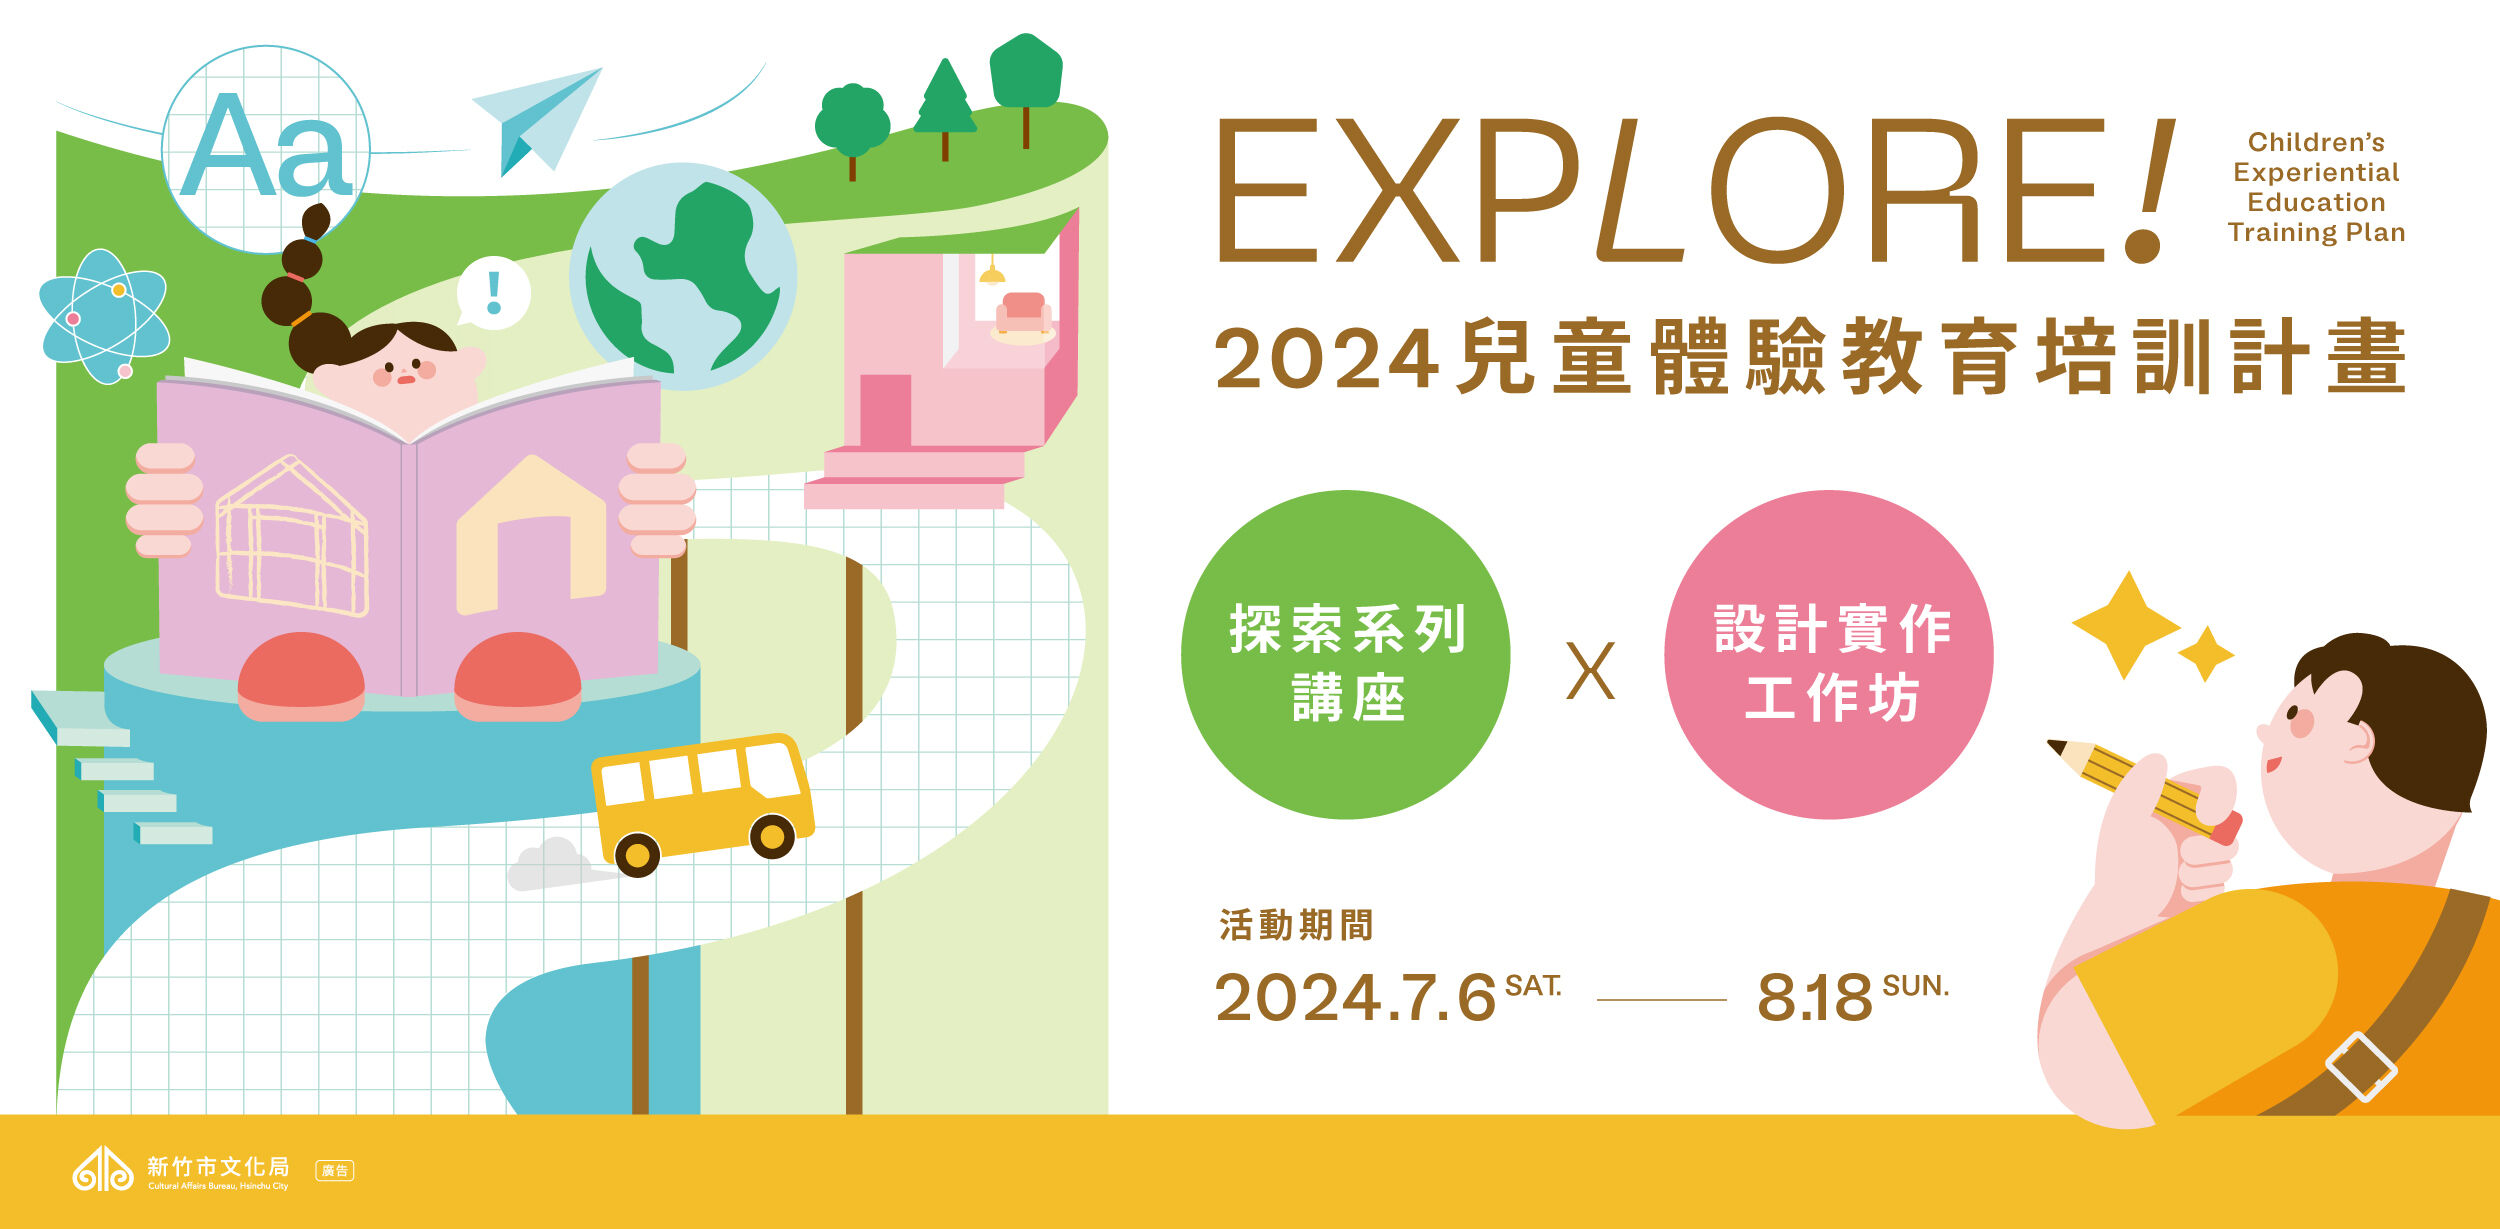 2024 EXPLORE!兒童體驗教育培訓計畫 將於6/7(五)至6/14(五)開放報名！